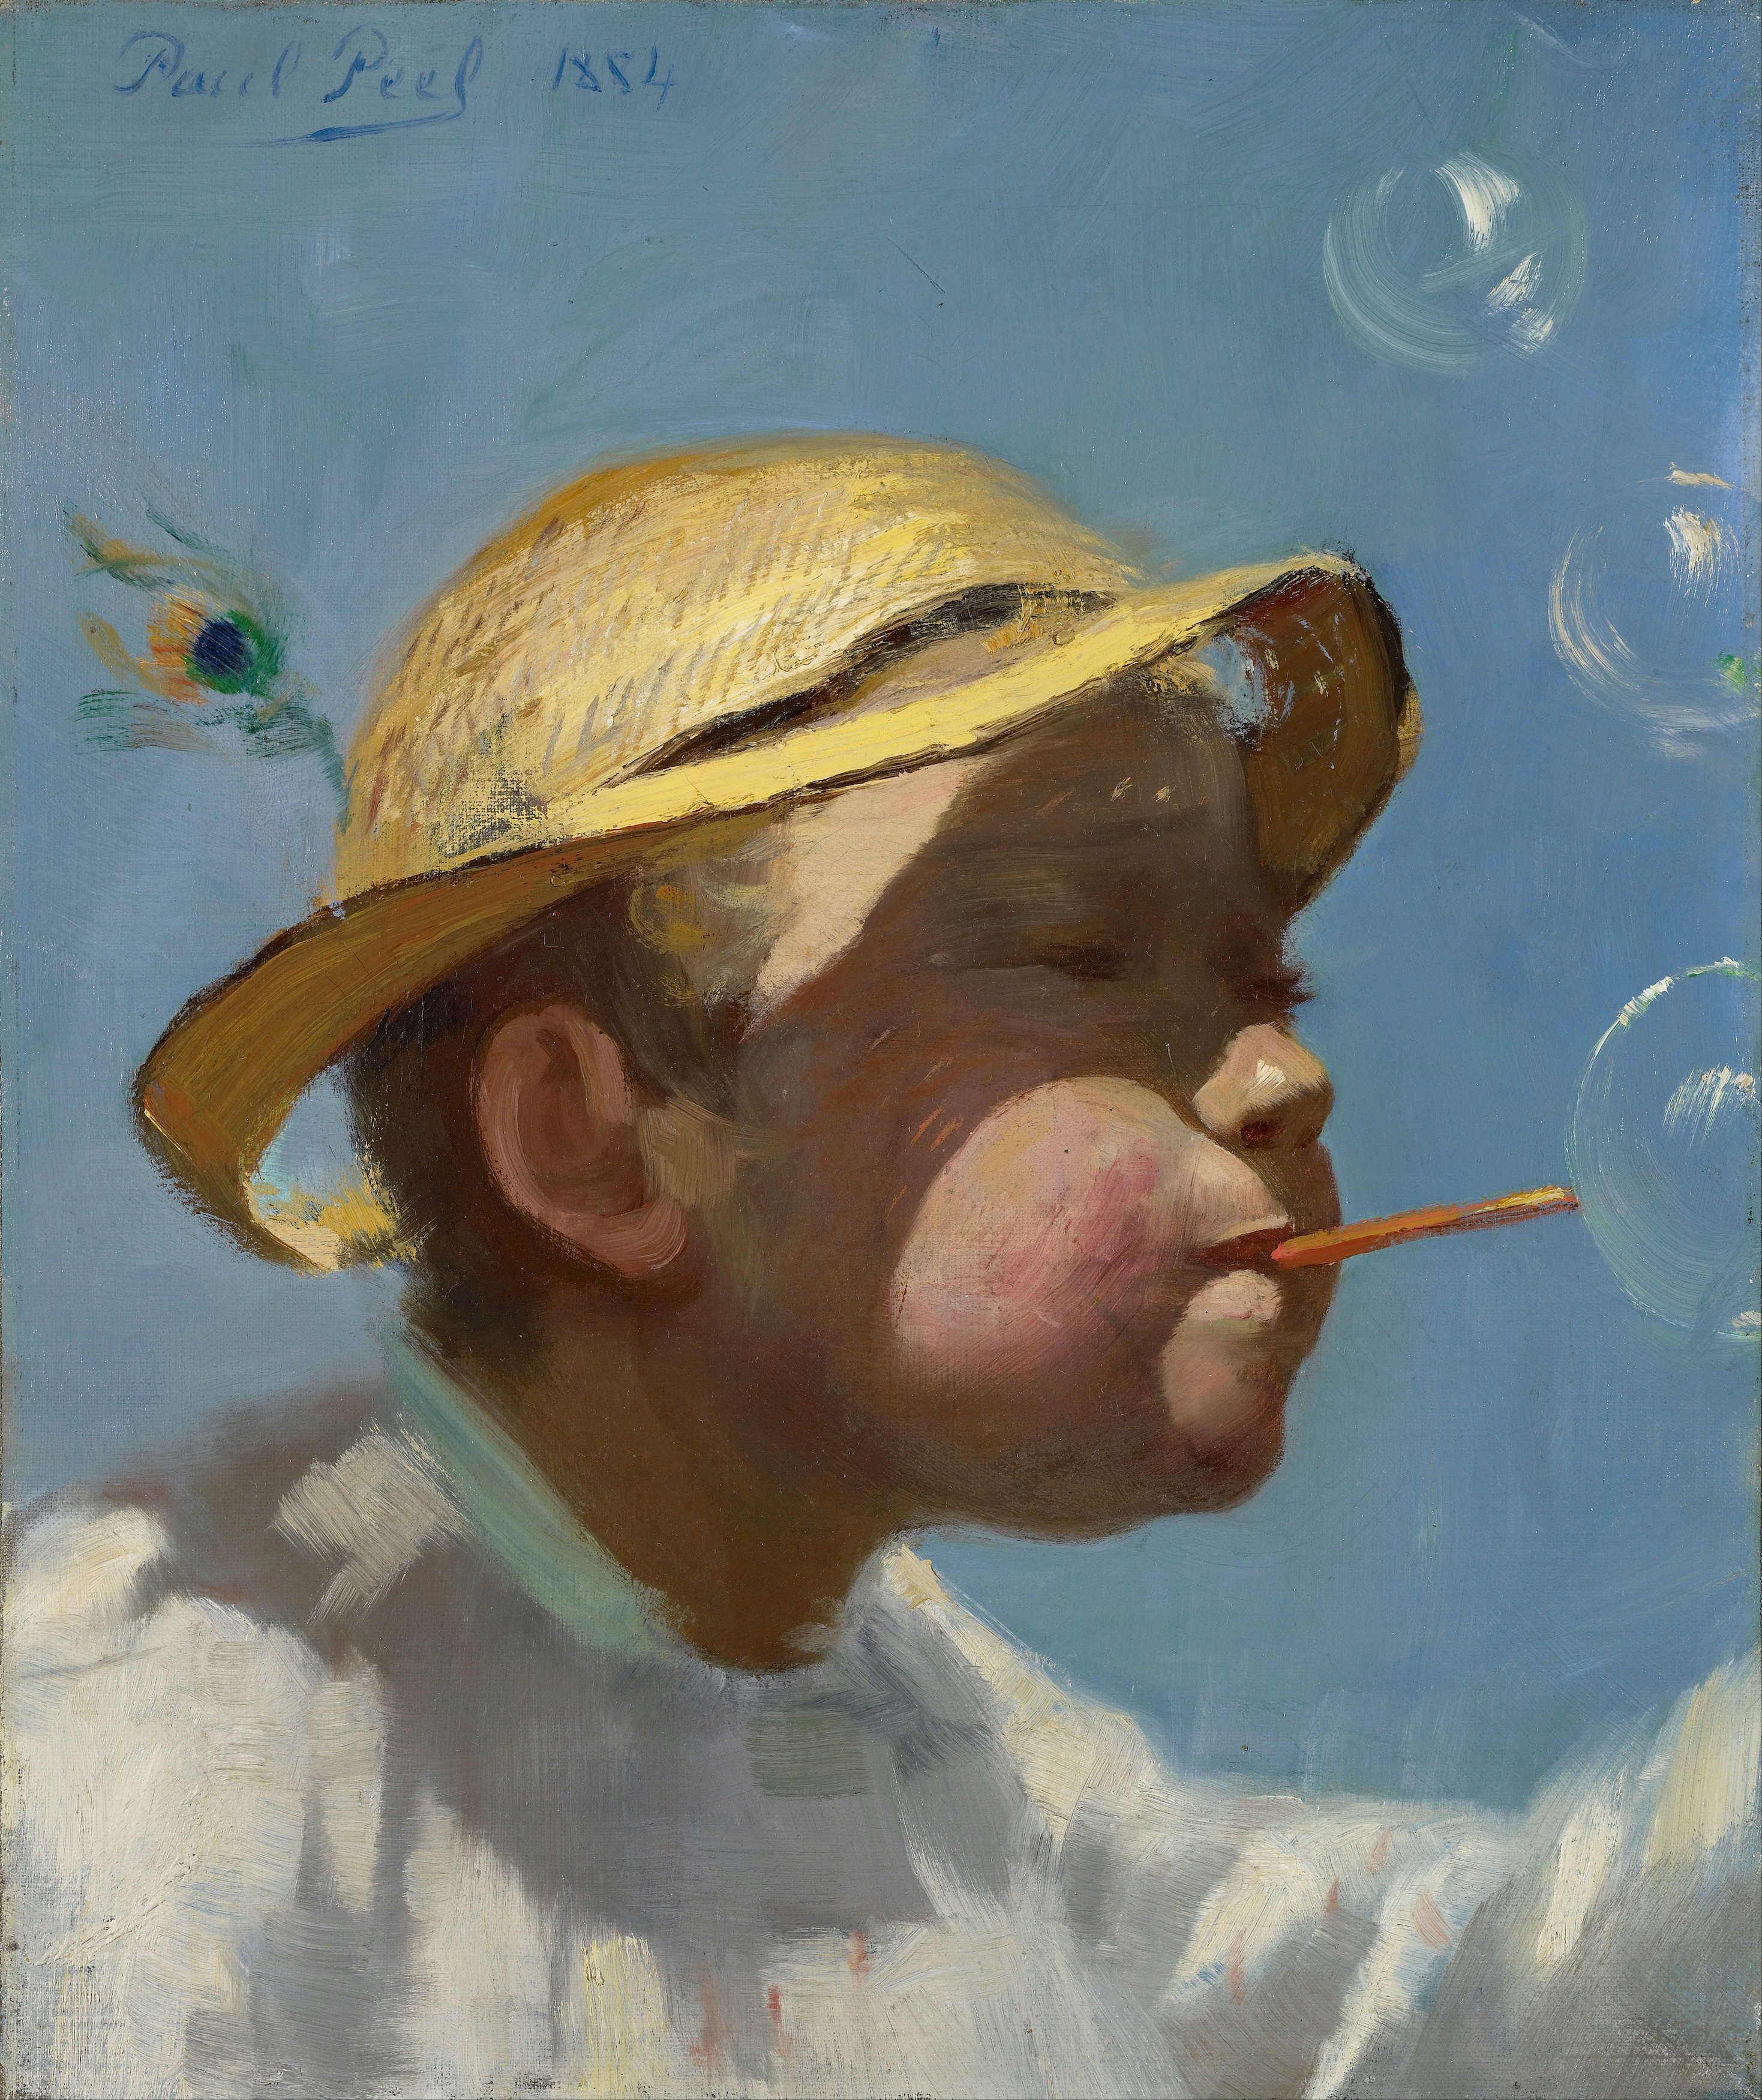 Hoy en DailyArt: El chico burbuja by Paul Peel - 1884 - 35,9 x 43,2 cm Galería de Arte de Ontario